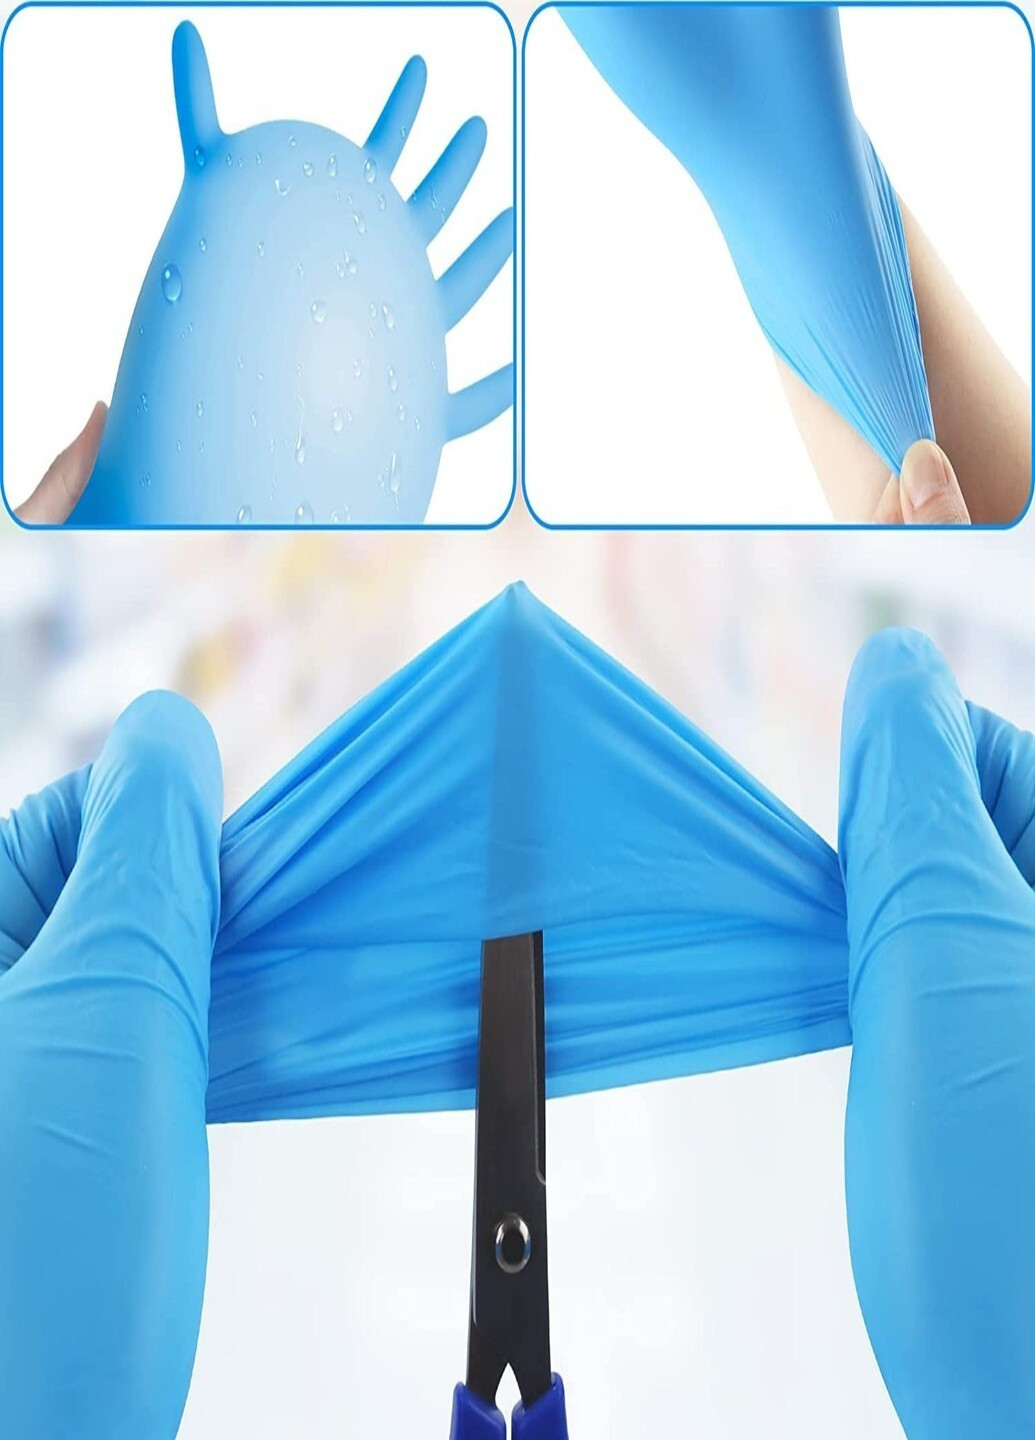 Рукавички нітрилові Blue текстуровані без пудри блакитні розмір M (3,6 г.) Medicom (254341239)